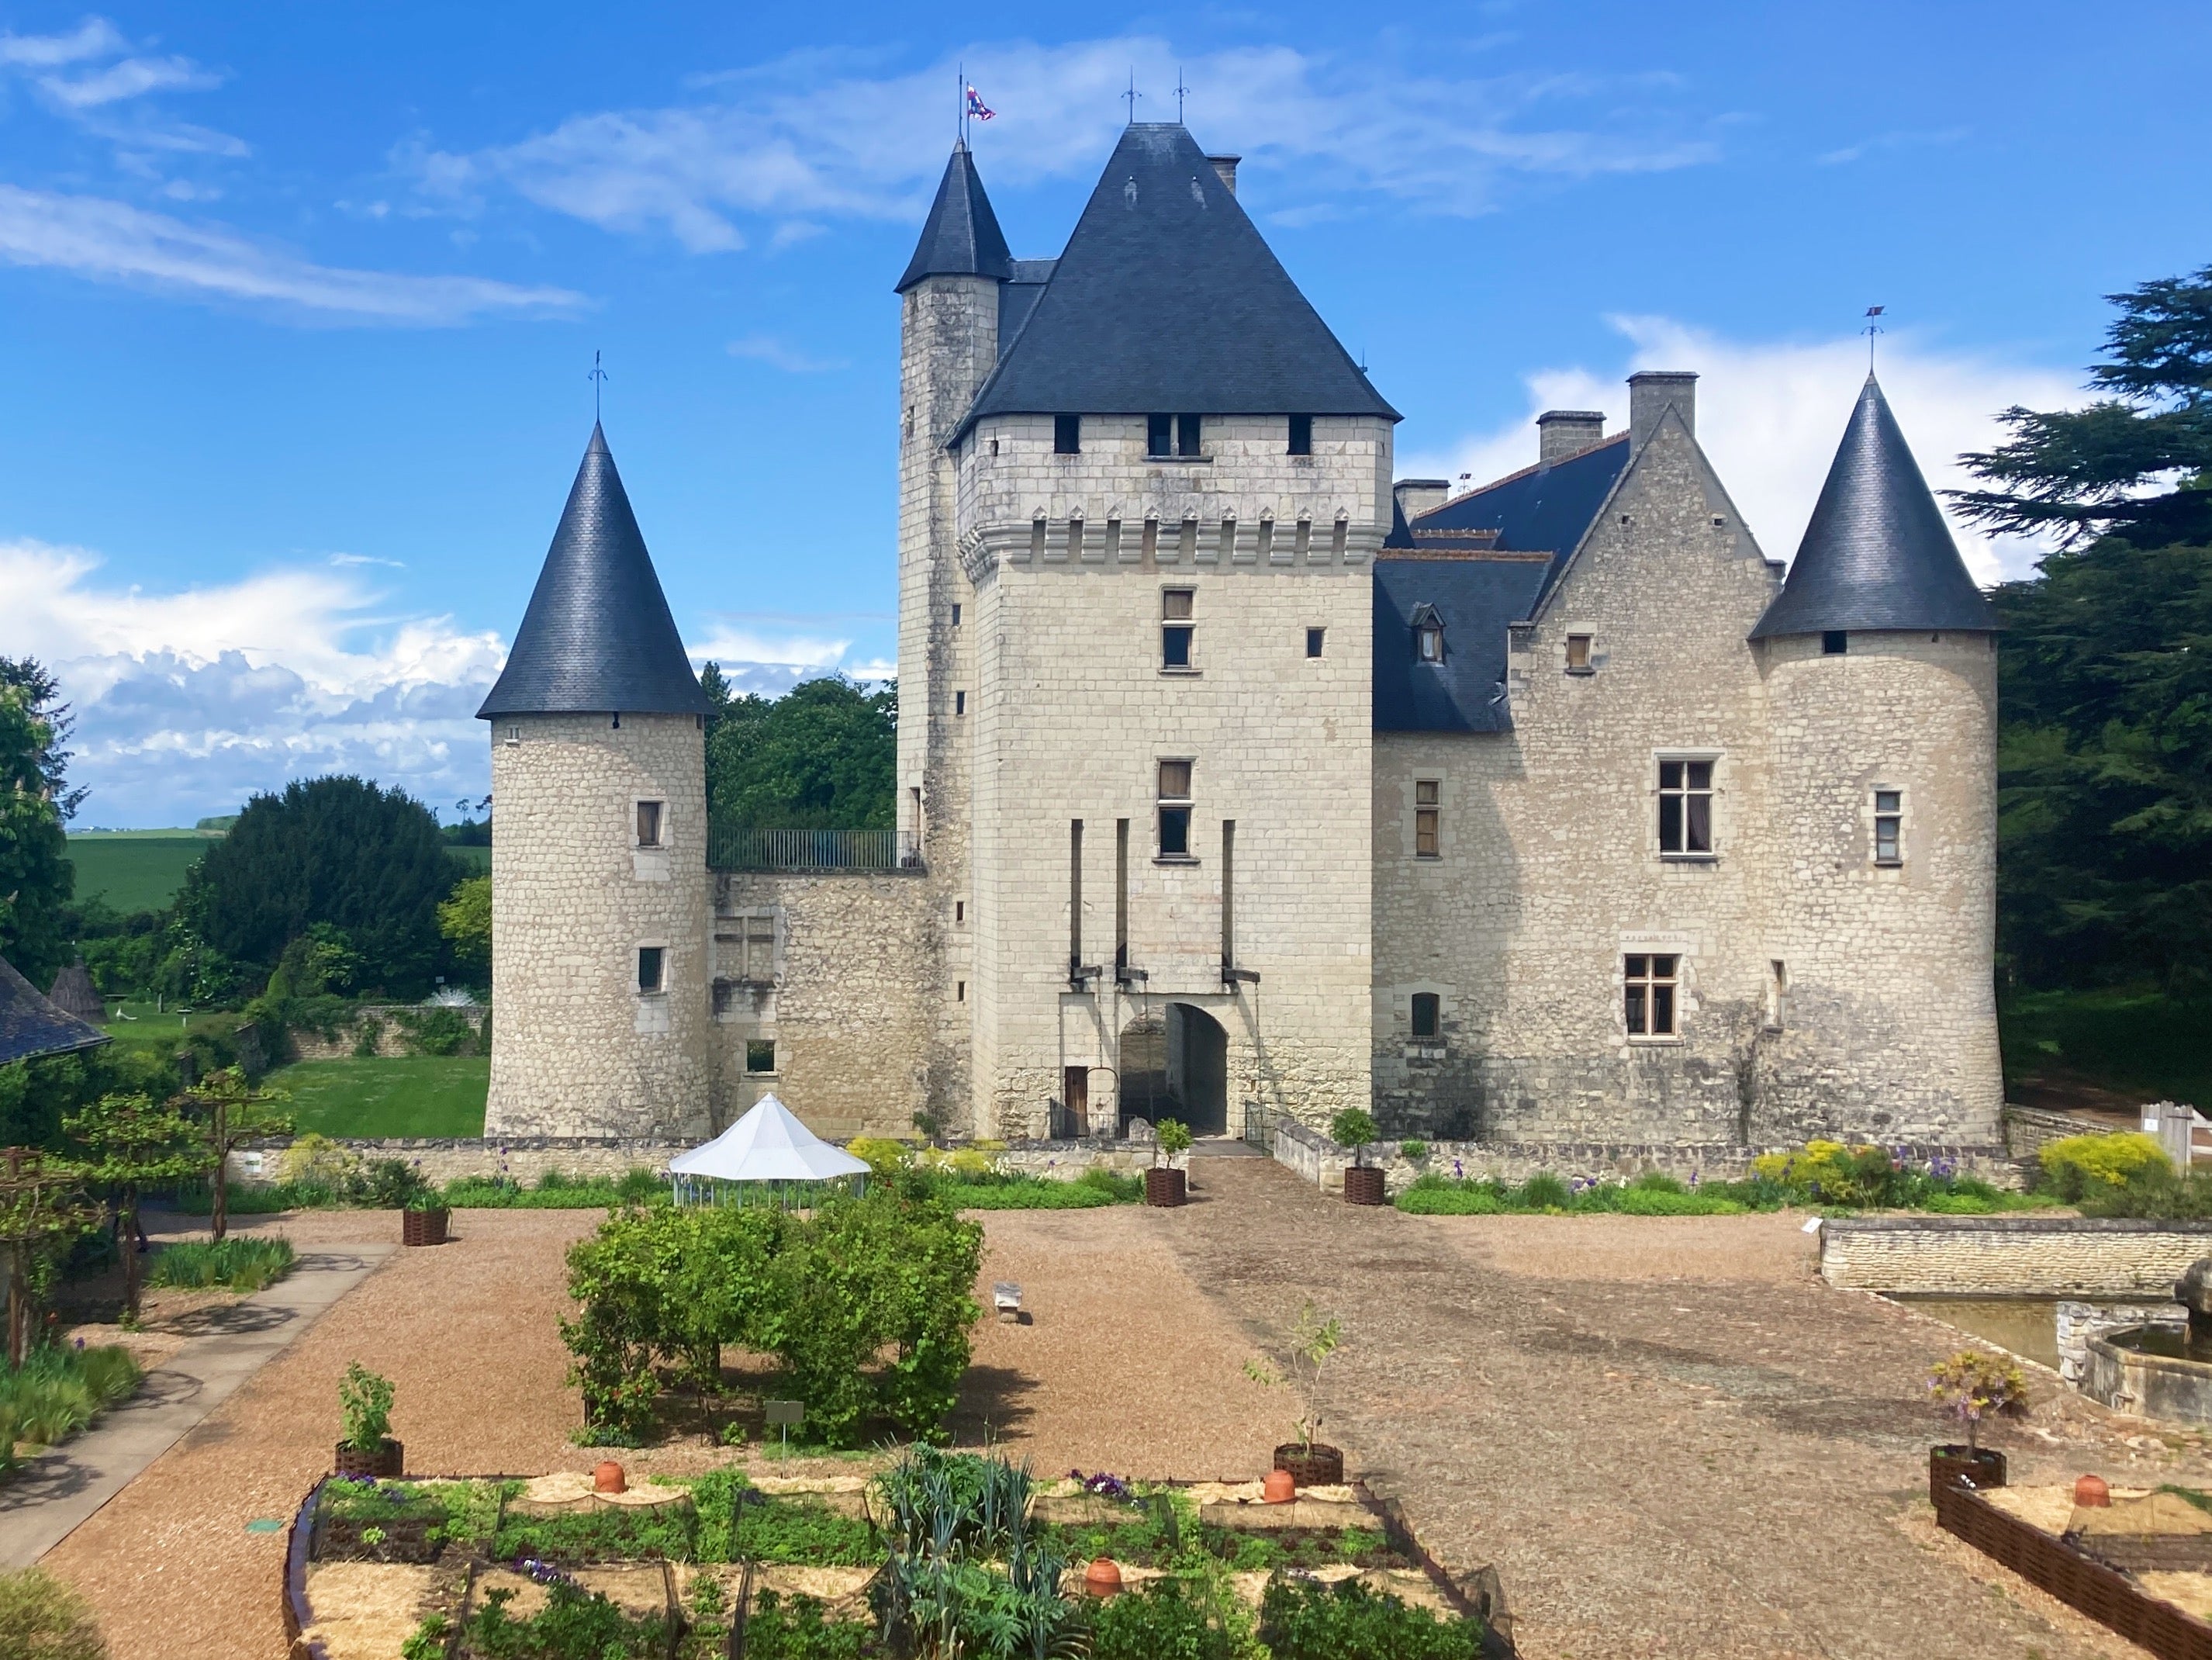 Serious Disney castle vibes at Chateau du Rivau